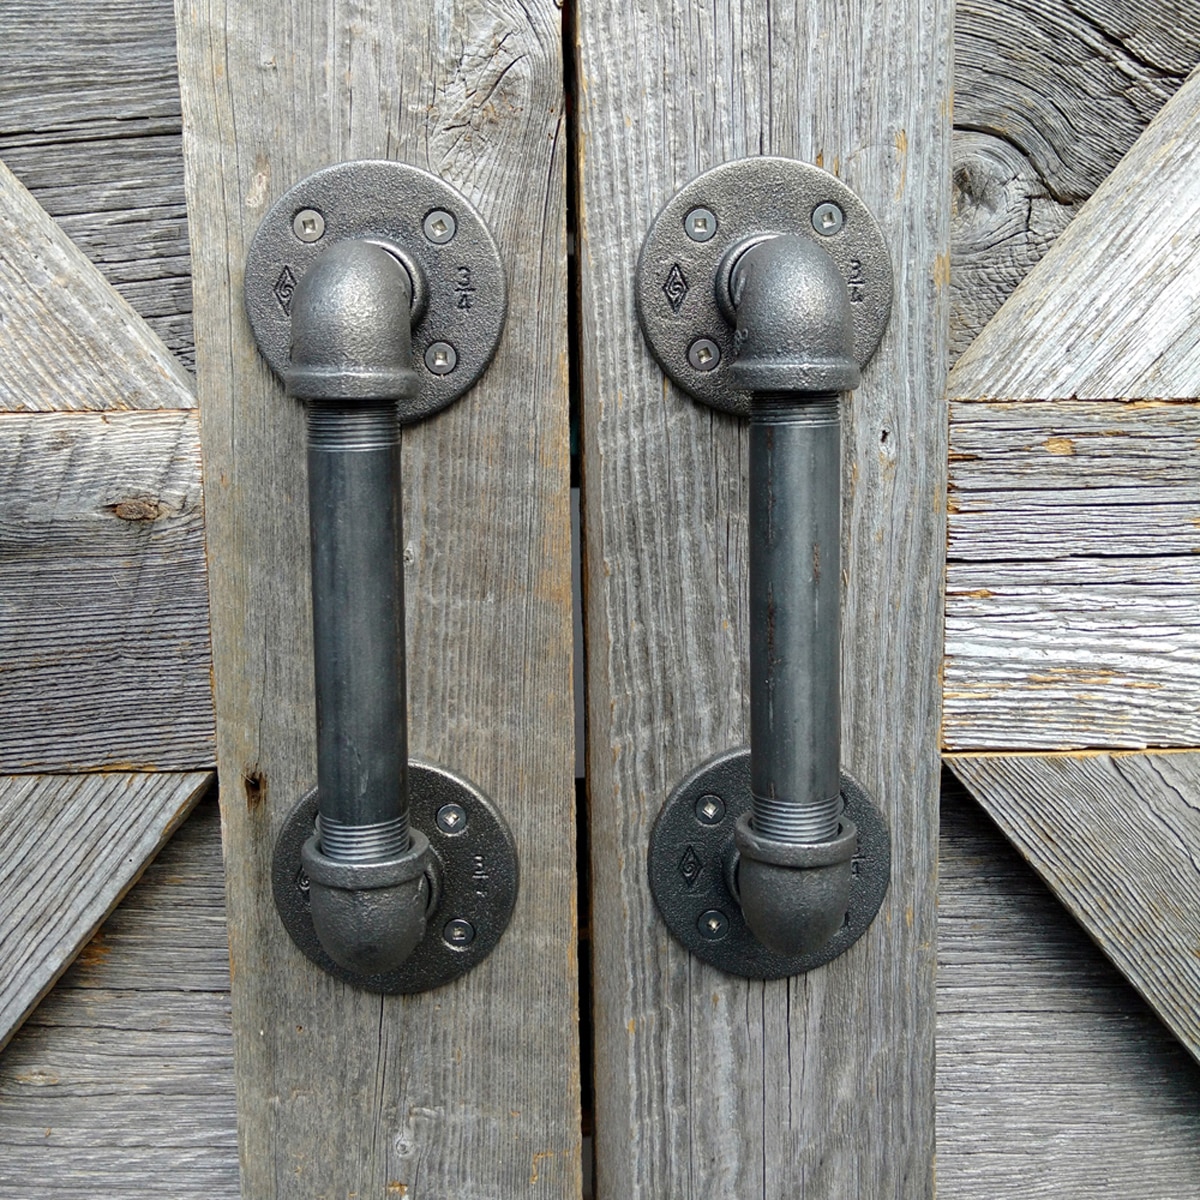 door handles made of water pipes